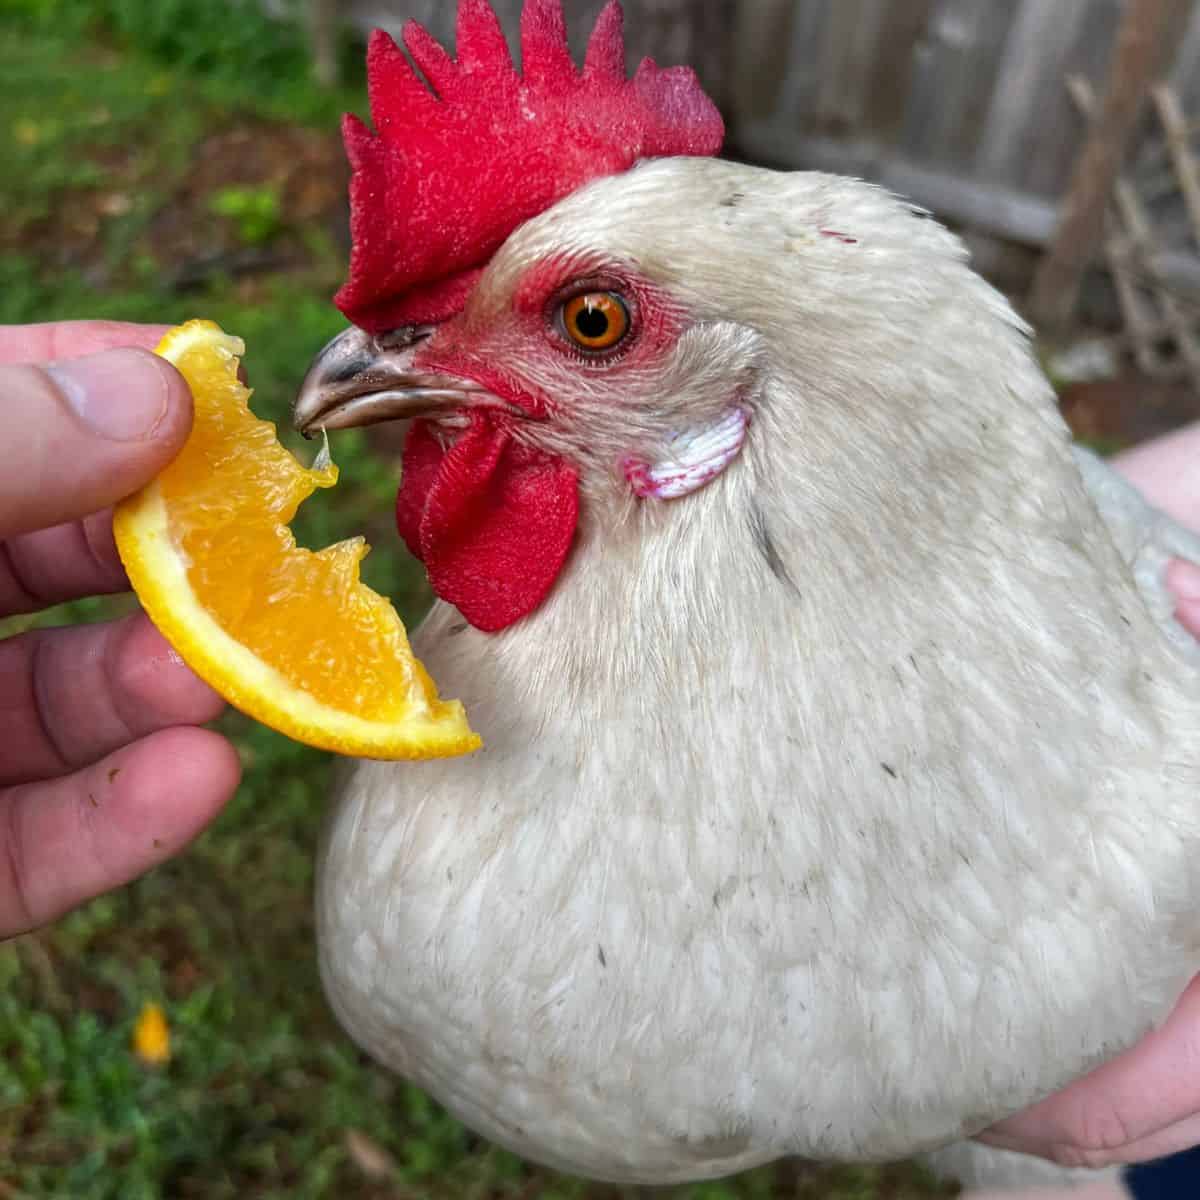 Chicken being held next to a slice of orange.